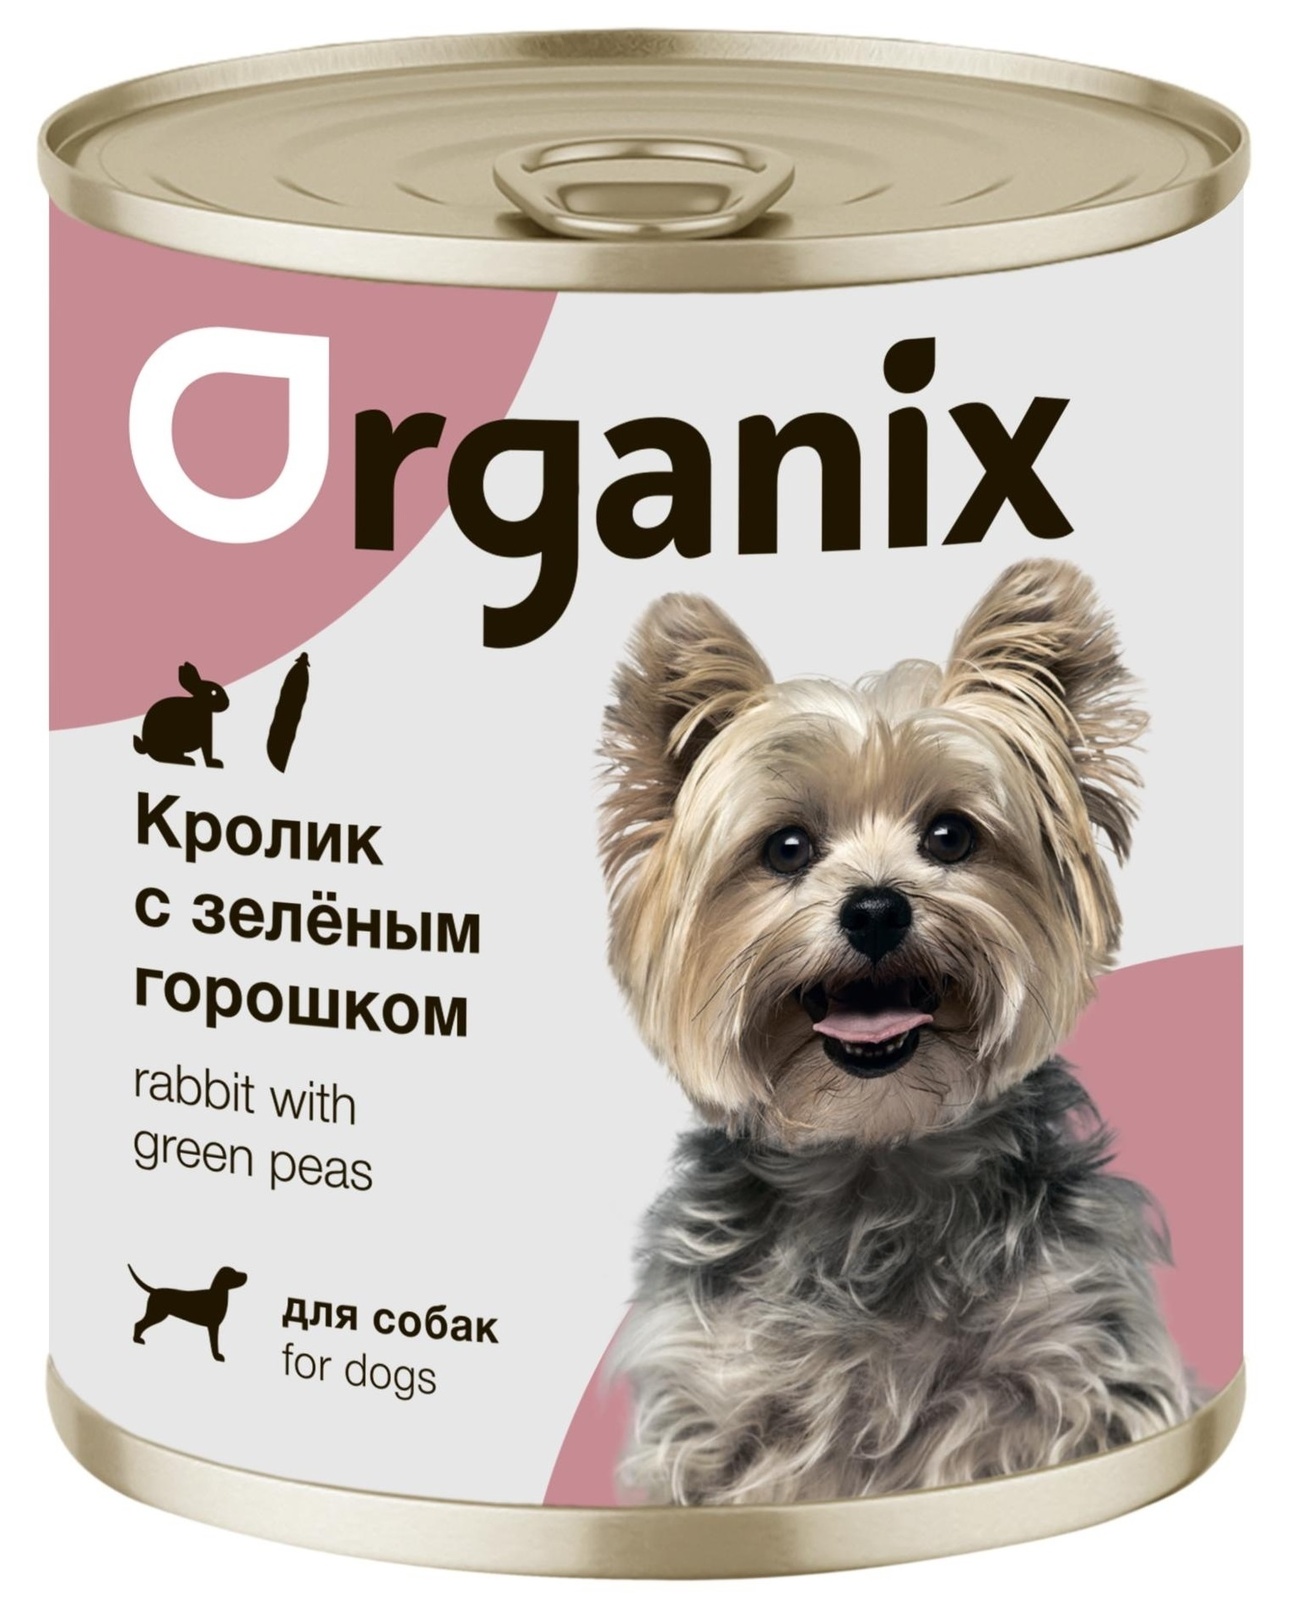 Organix консервы Organix консервы для собак Кролик с зеленым горошком (100 г) organix консервы organix консервы для собак индейка с сердечками и шпинатом 100 г